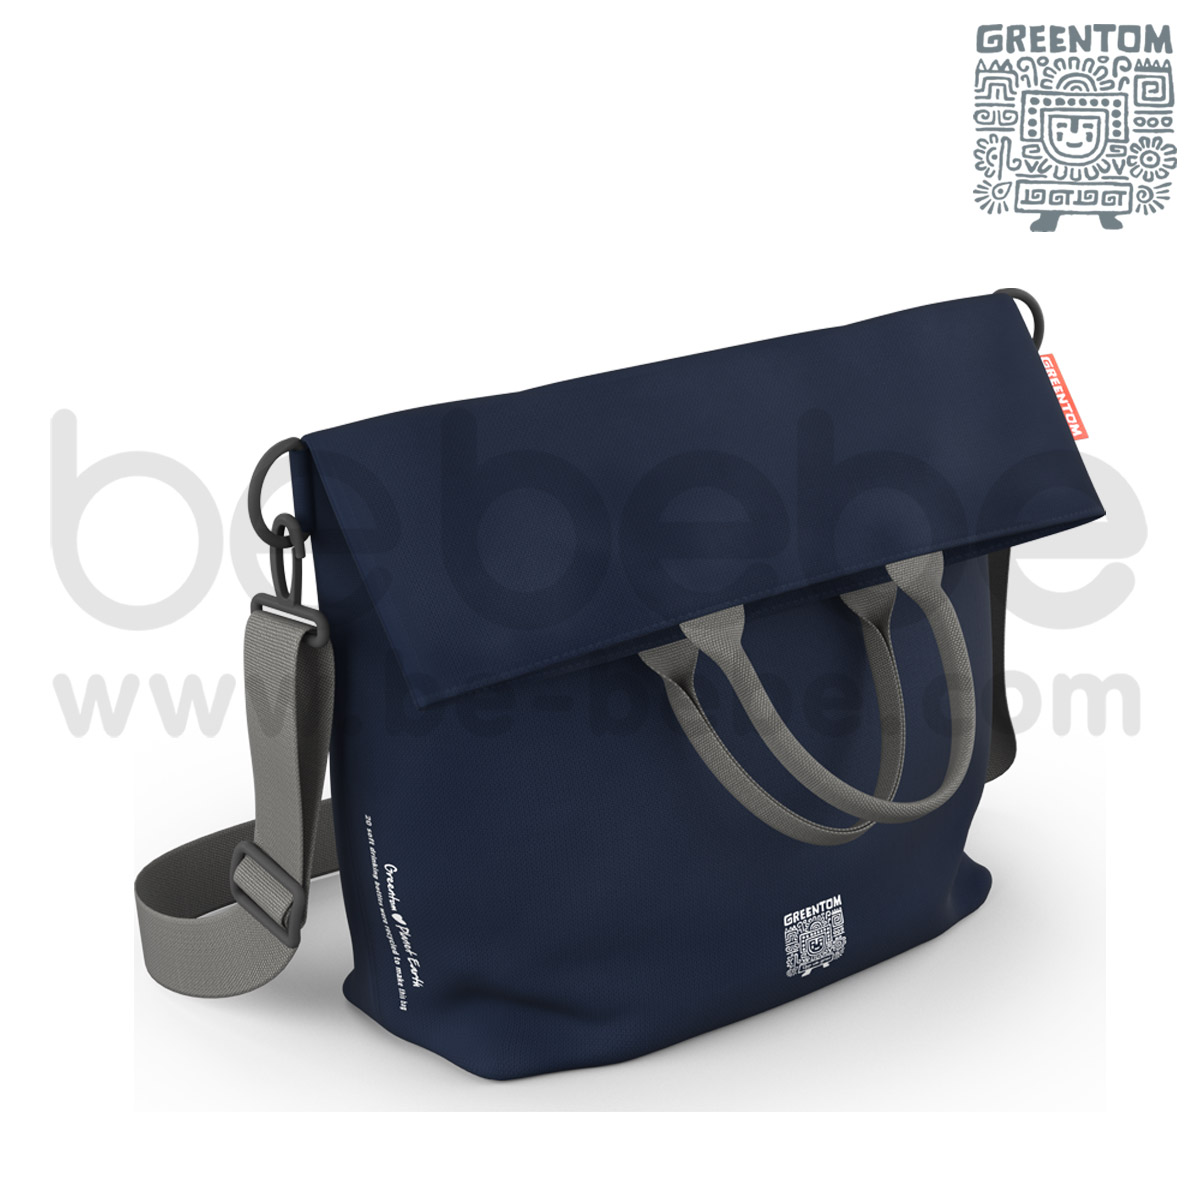 Greentom : Diaper Bag / Blue